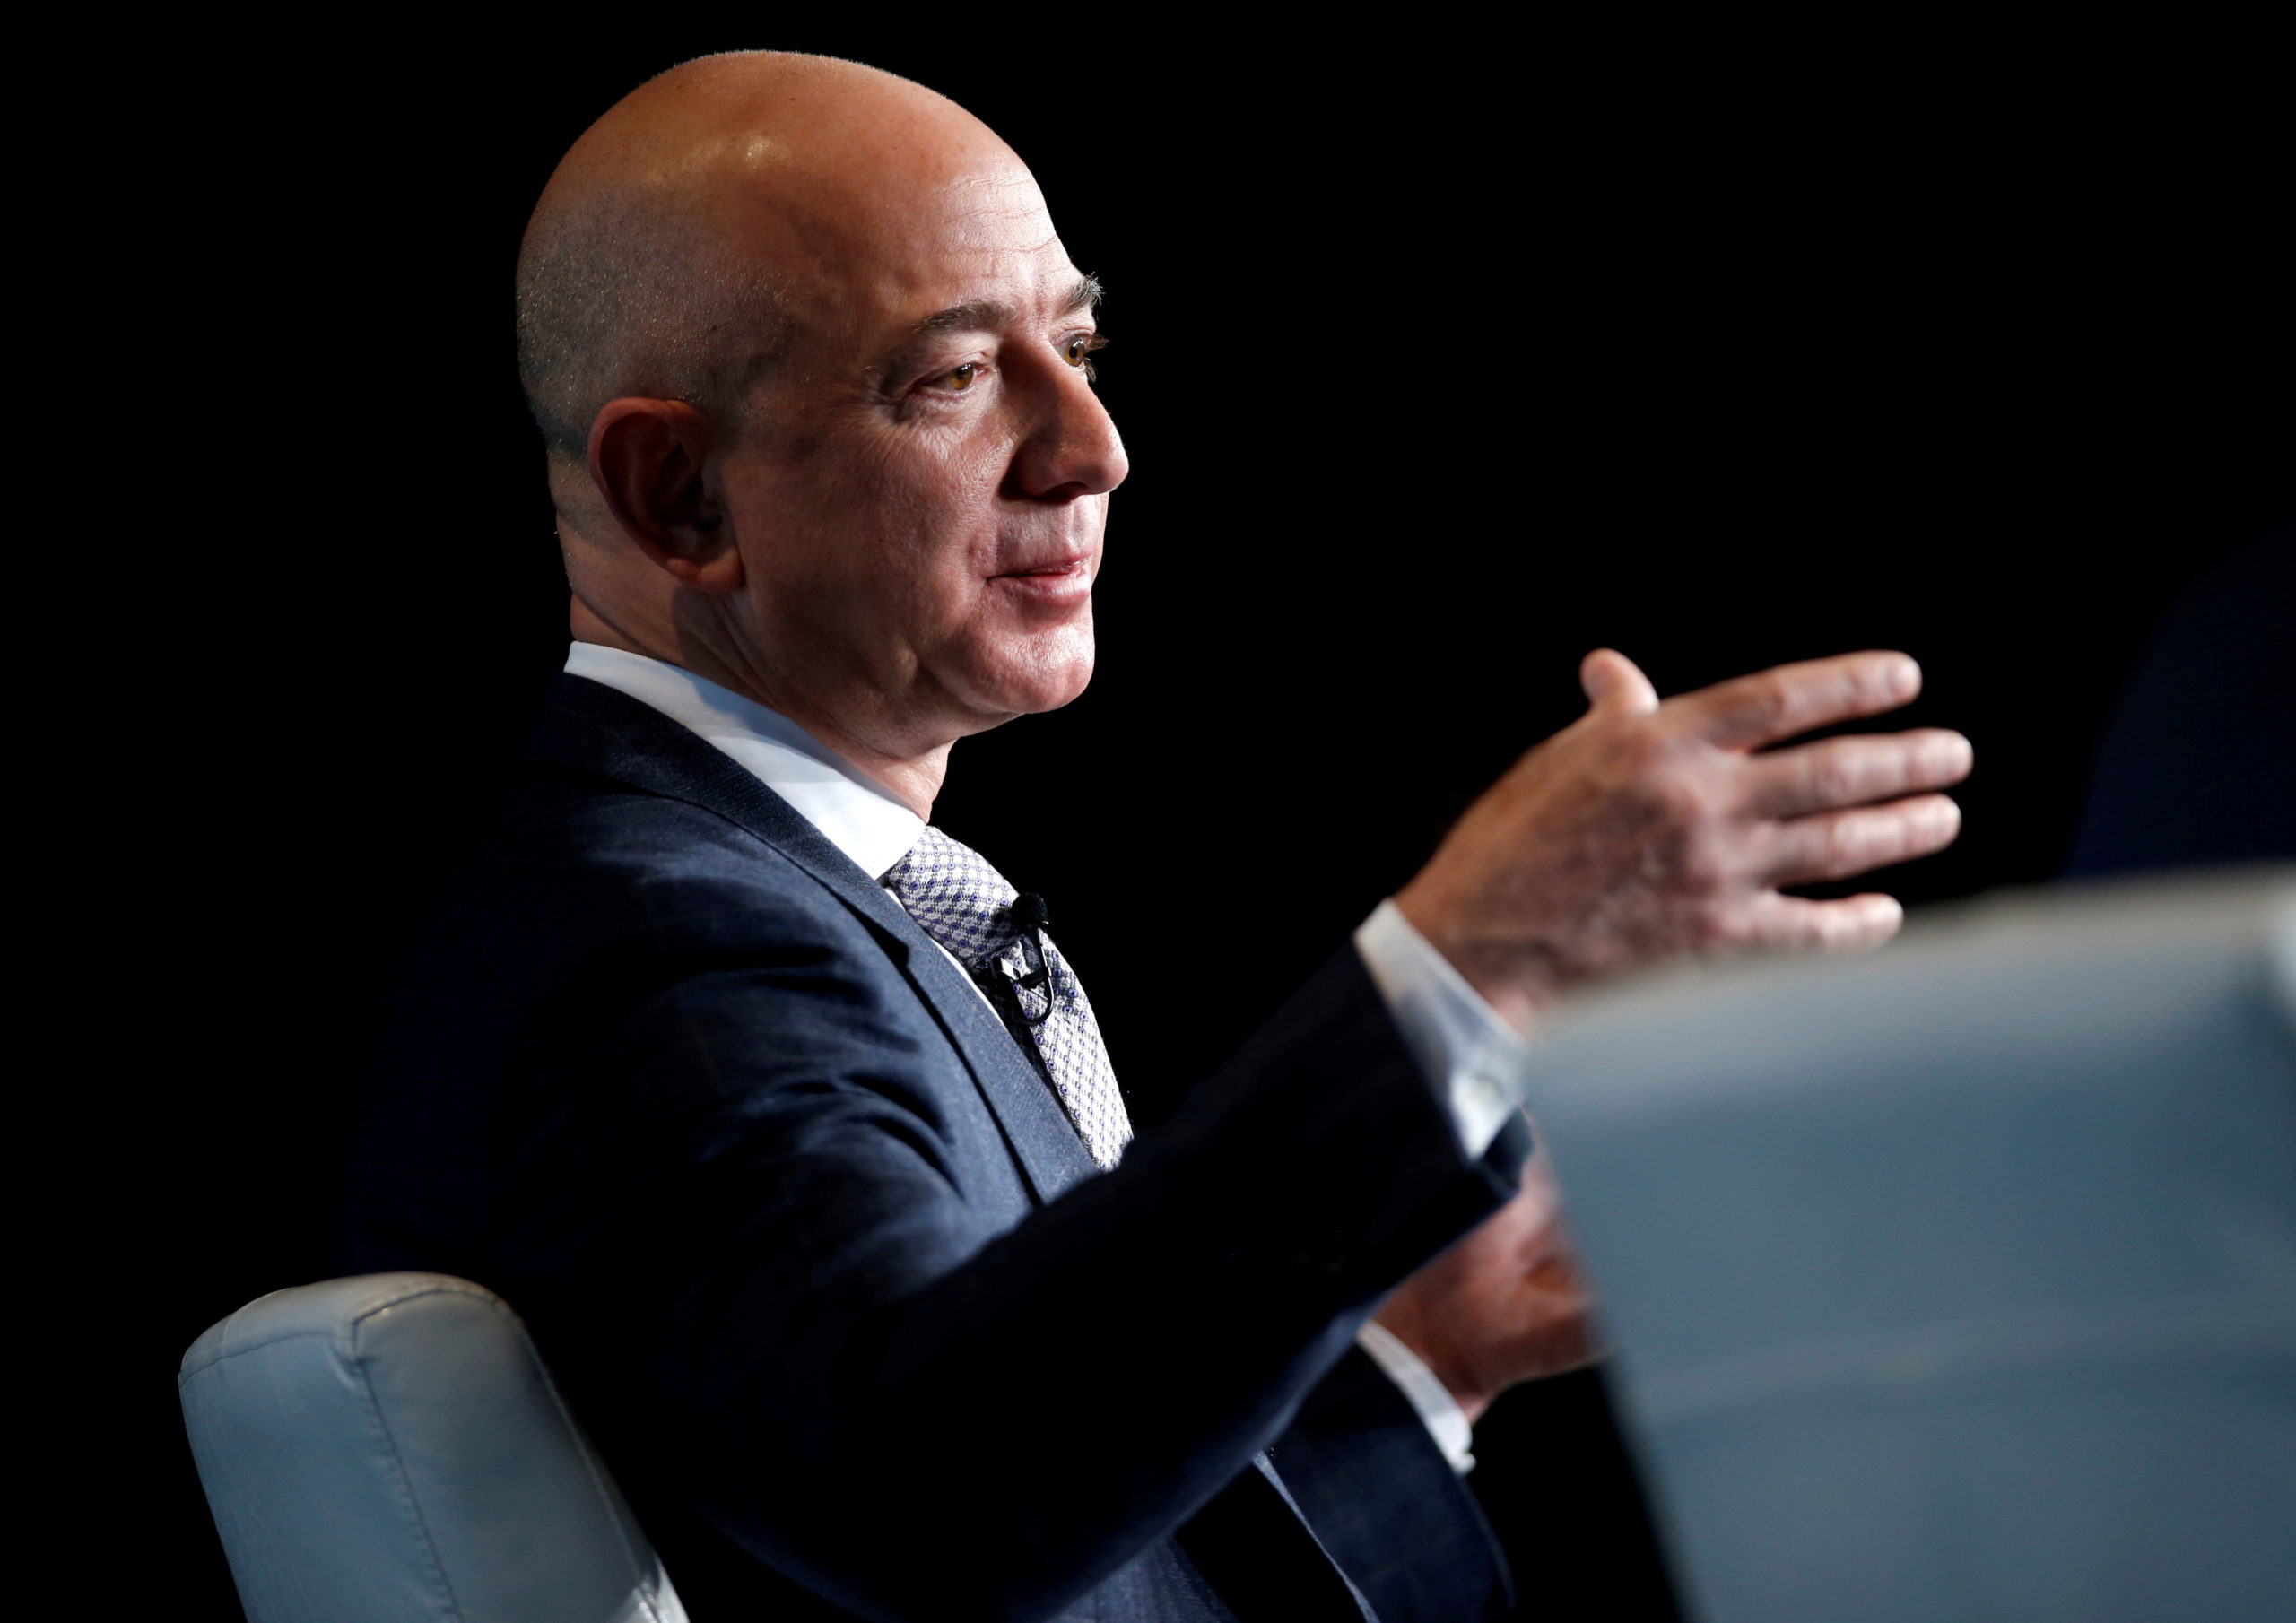 Jeff Bezos vende unos 2,000 millones de dólares en acciones de Amazon